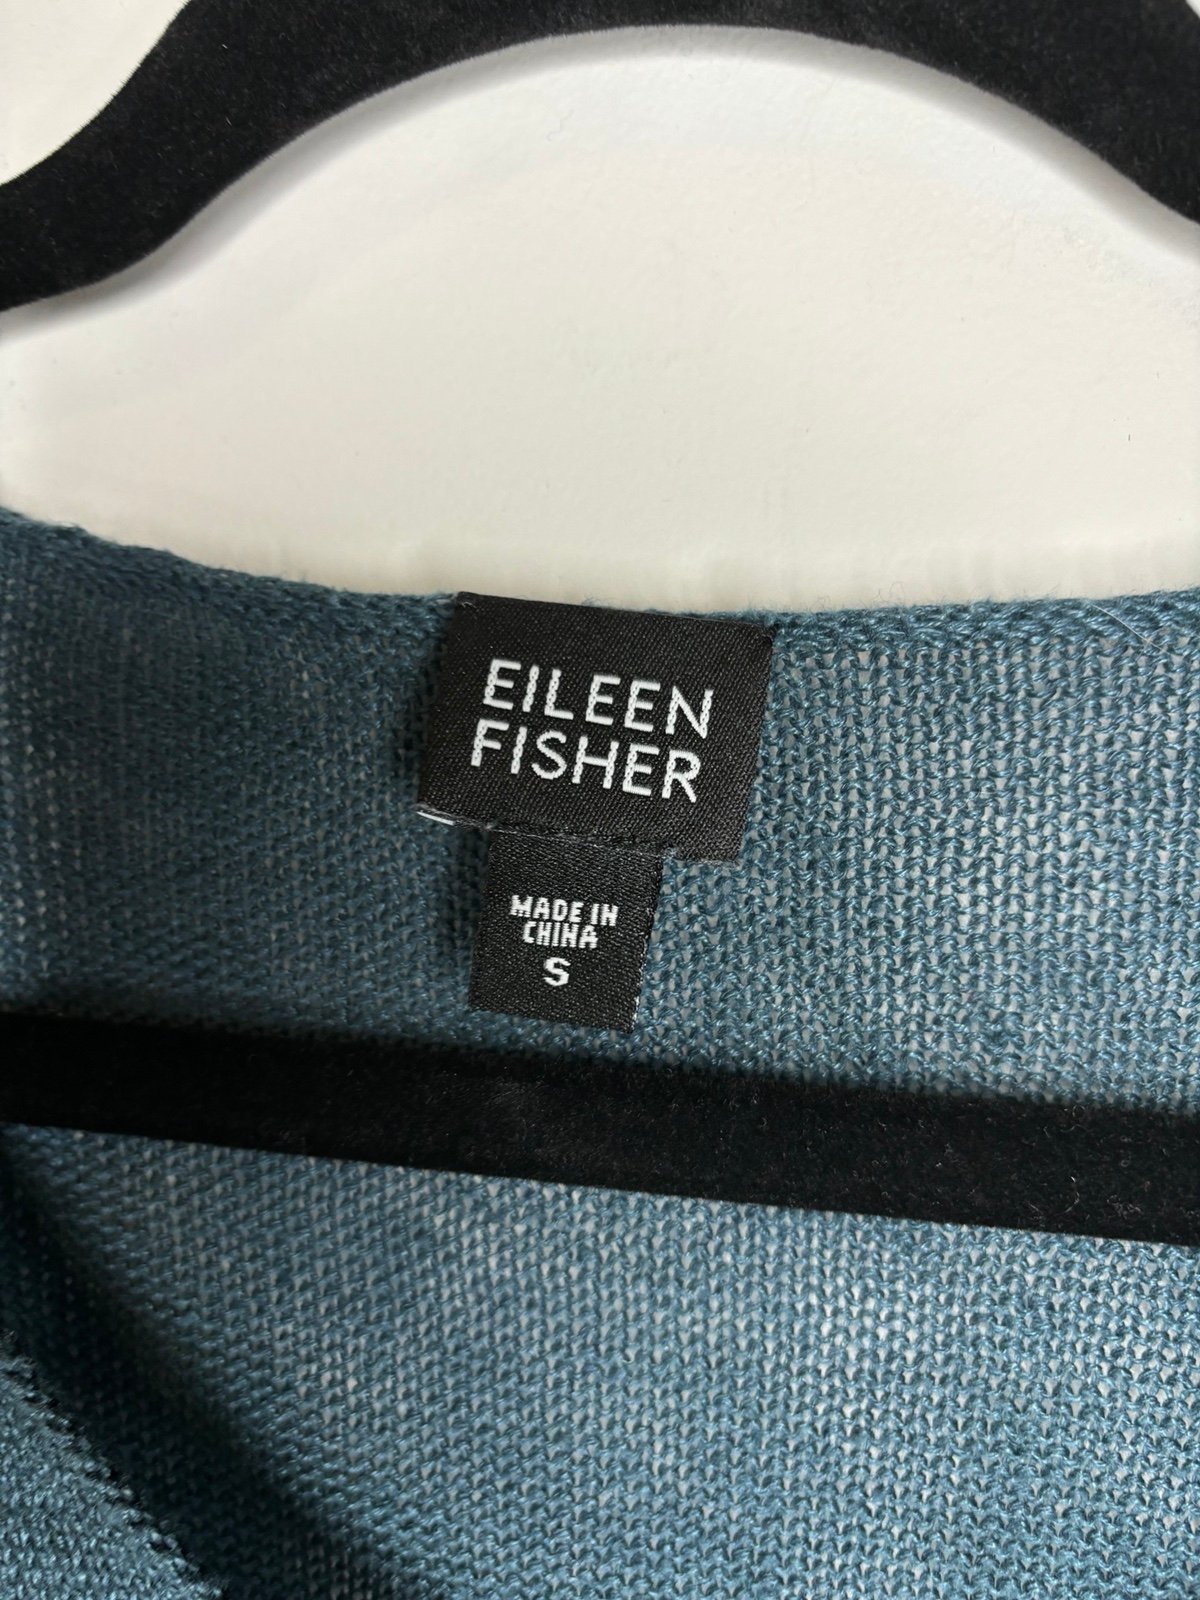 Promotions  Eileen Fisher Vintage Y2K Teal Linen V-Neck Sweater K0ugsCv3G New Style